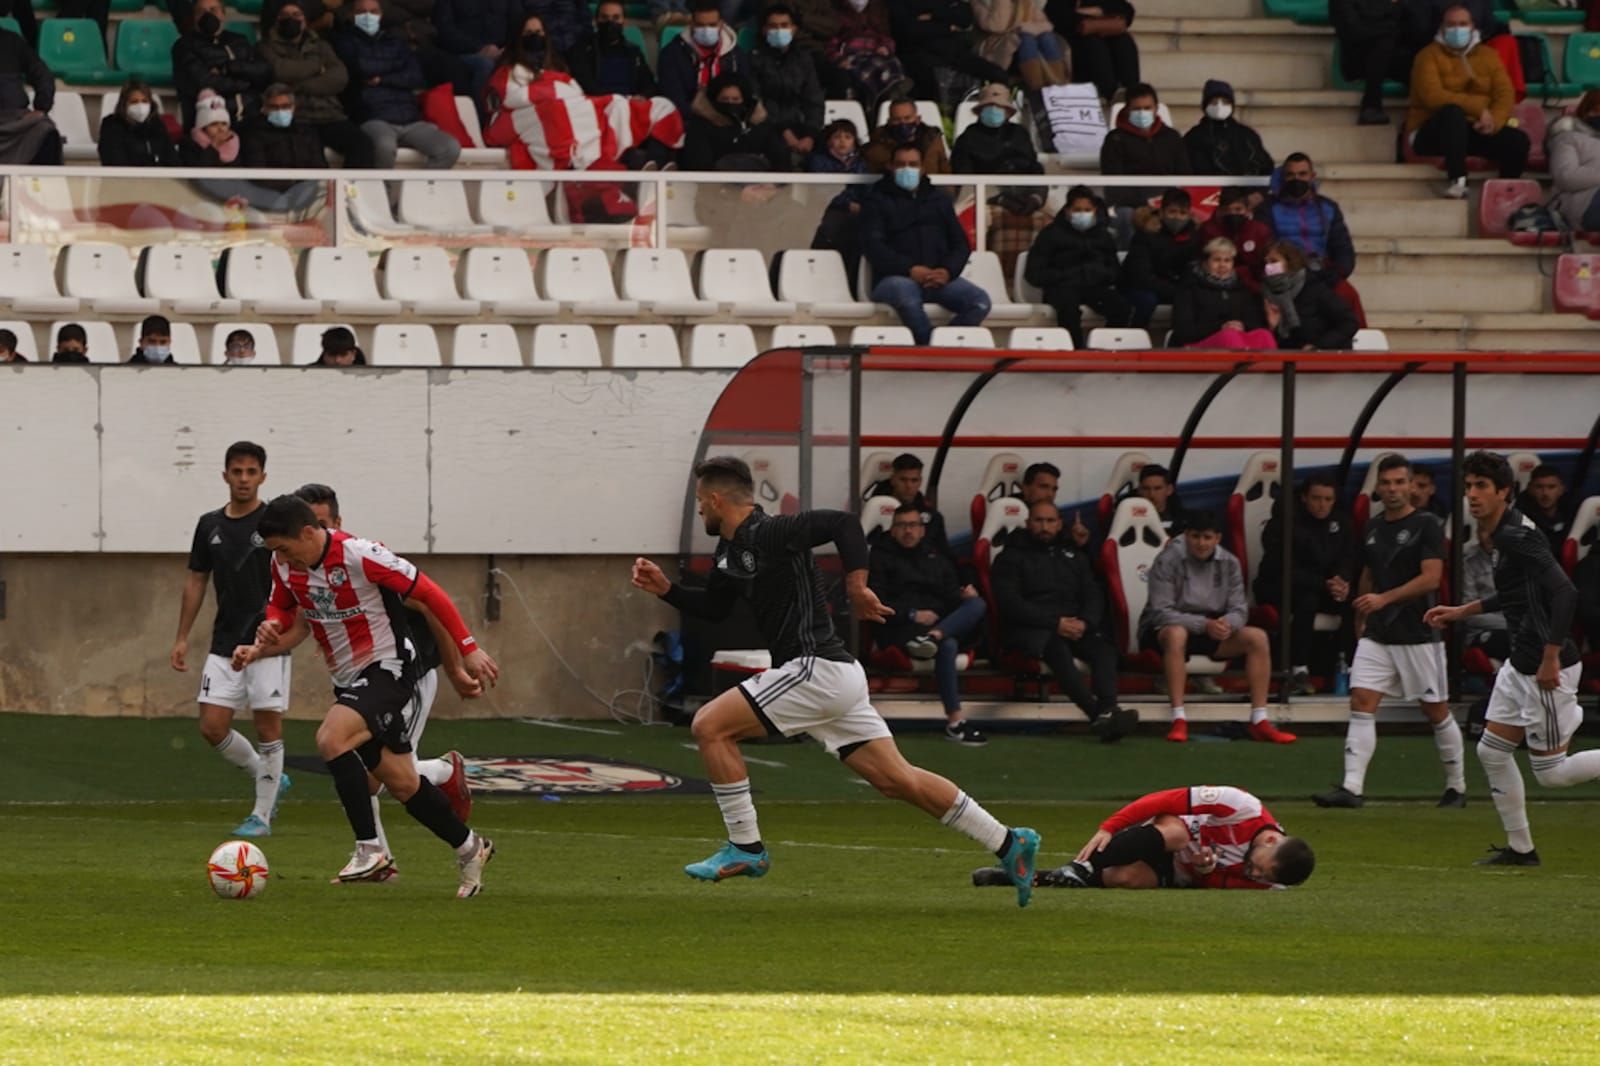 Repasa las mejores imágenes del partido entre el Zamora CF y el DUX Internacional